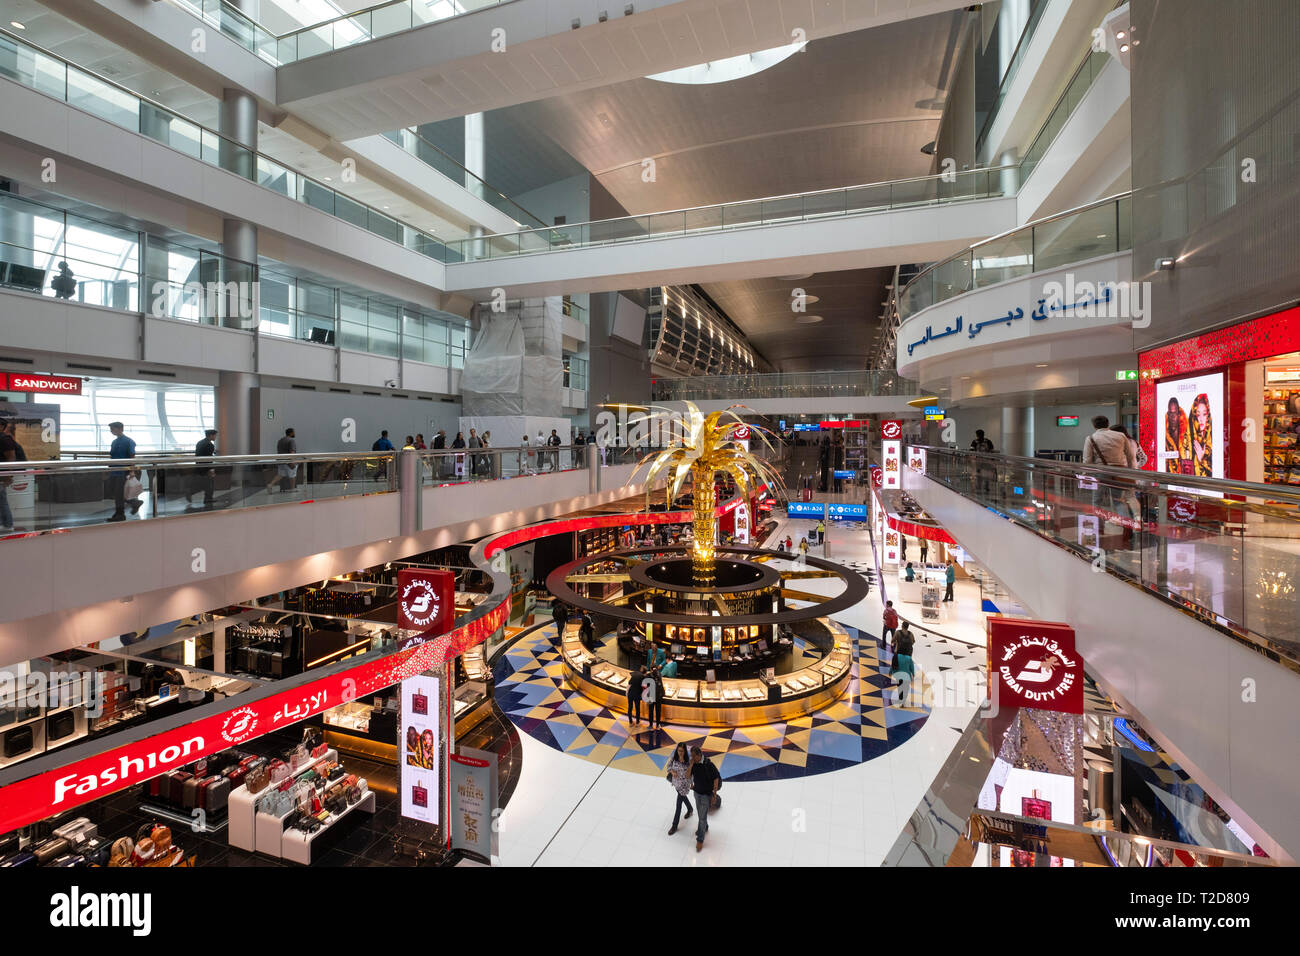 Duty Free Shops am Flughafen Dubai, Vereinigte Arabische Emirate Stockfoto